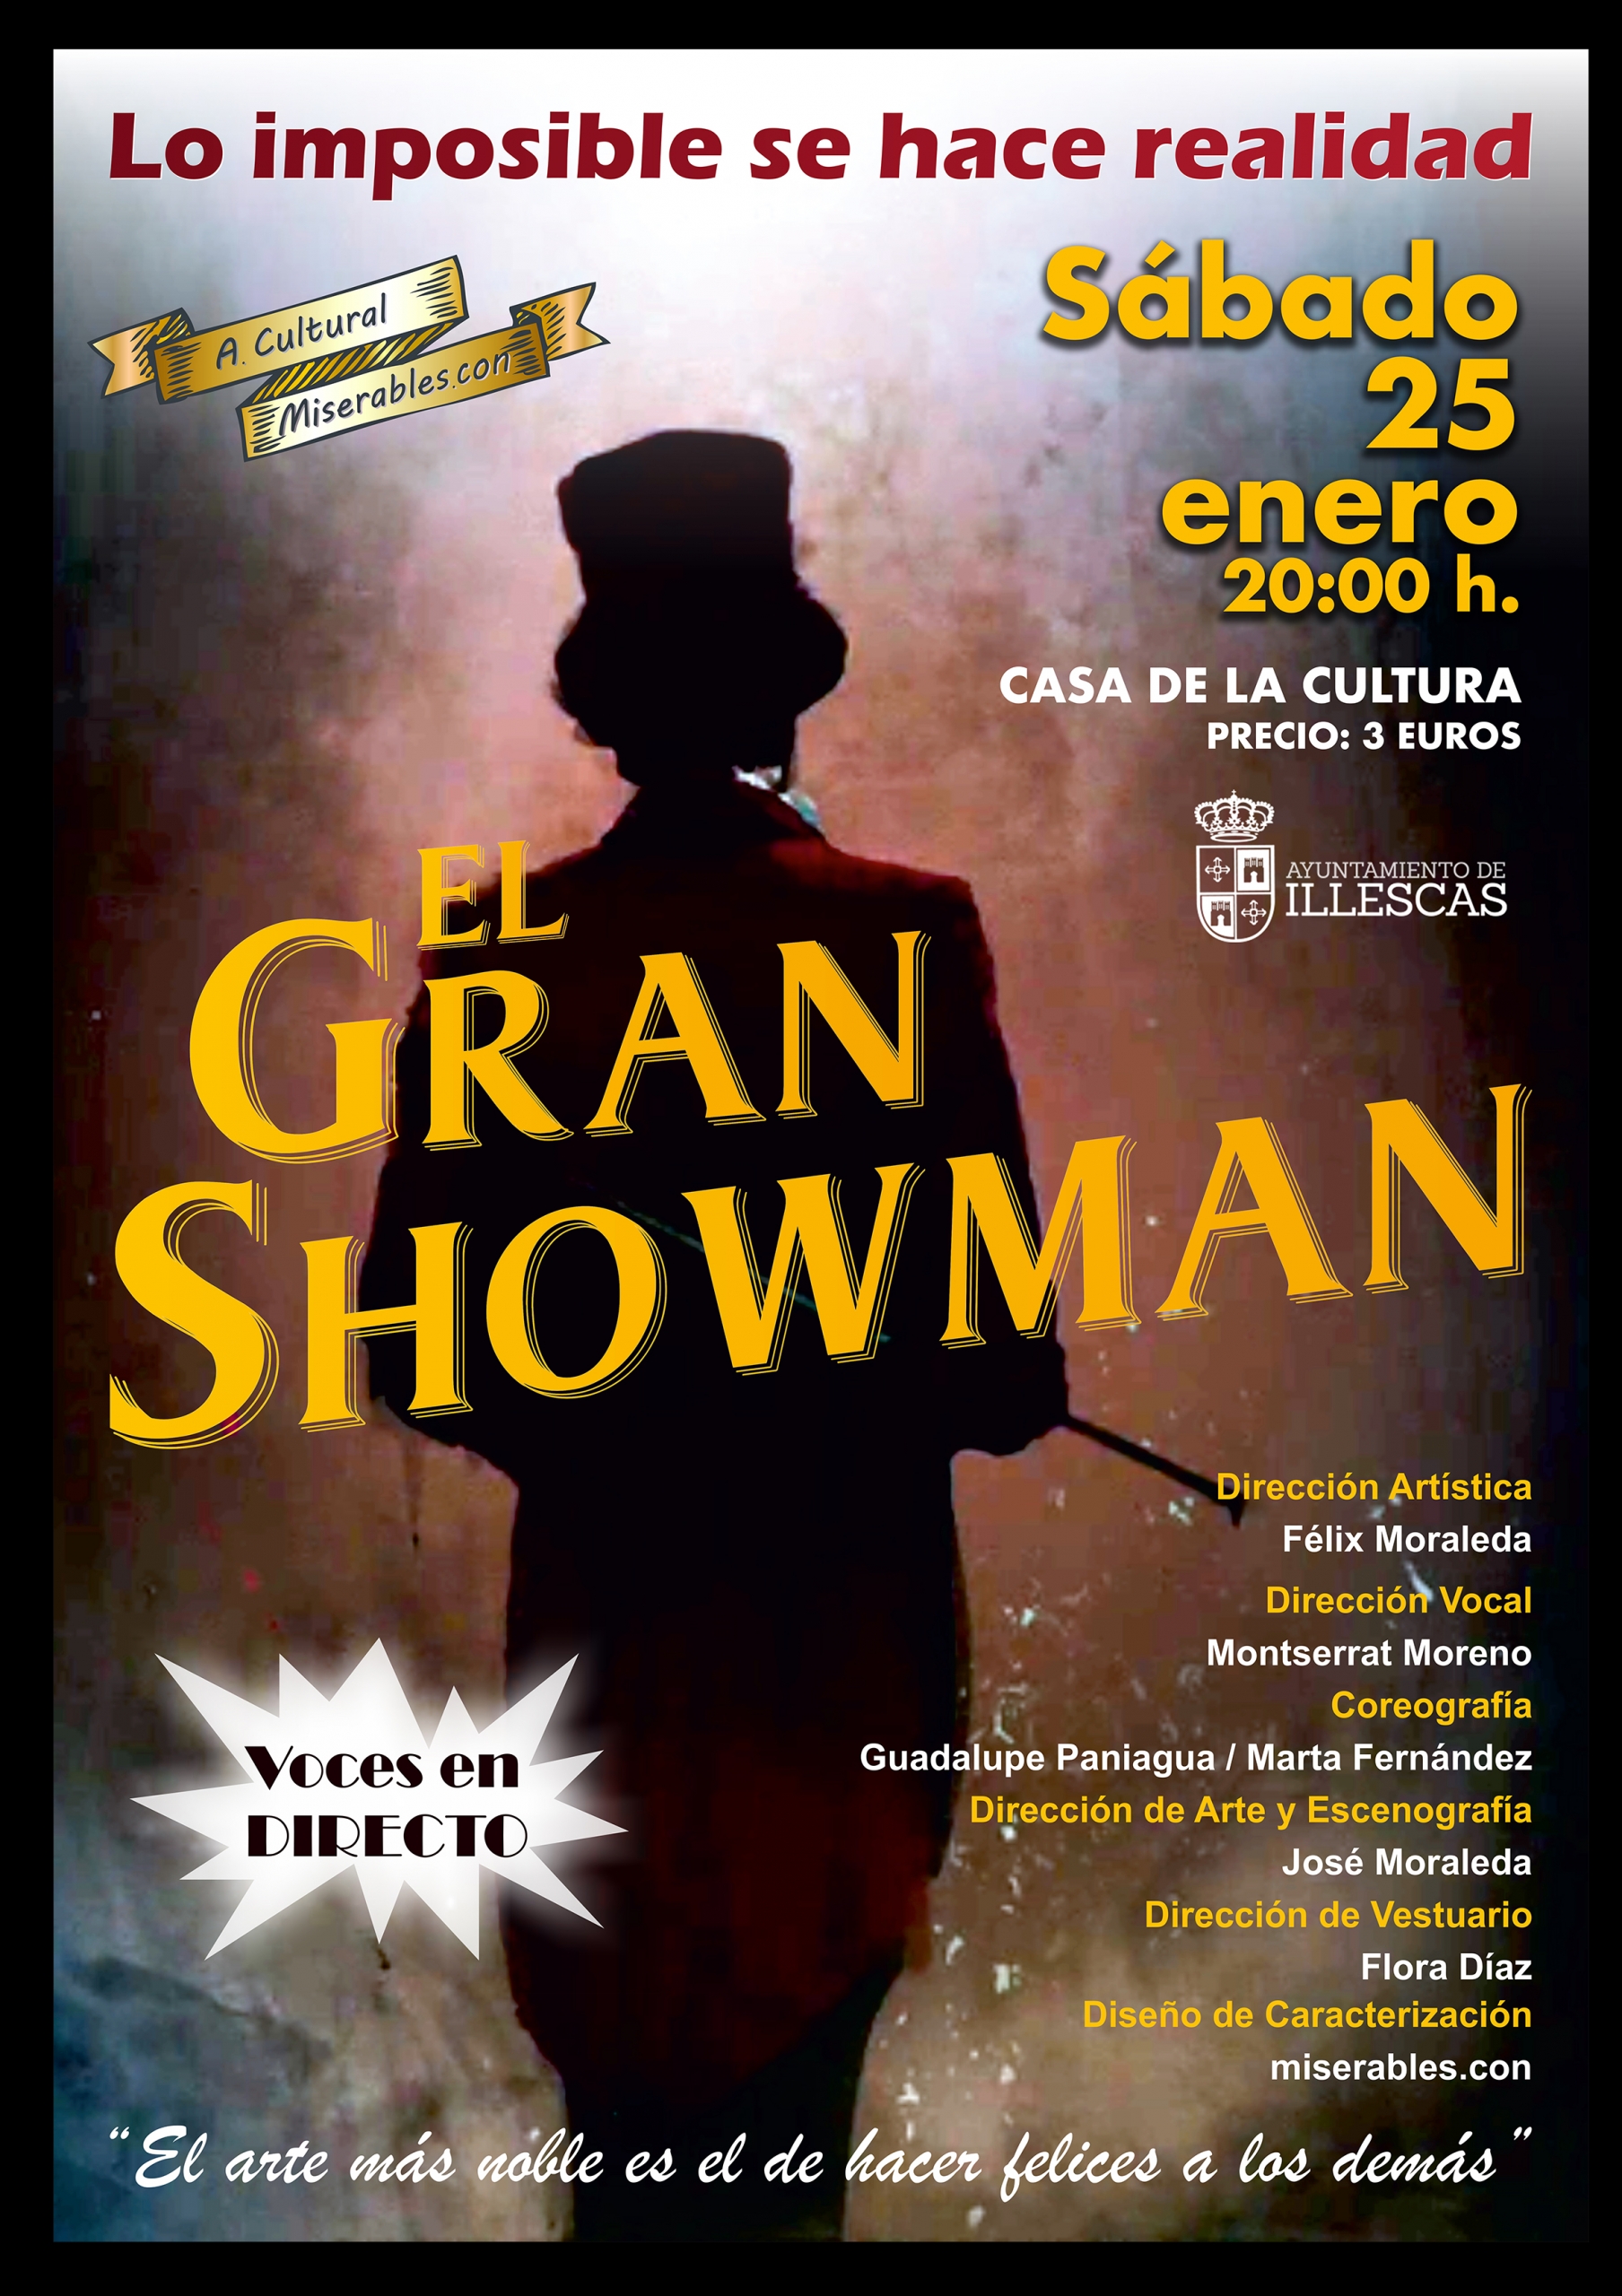 TEATRO MUSICAL "EL GRAN SHOWMAN" - Ayuntamiento de